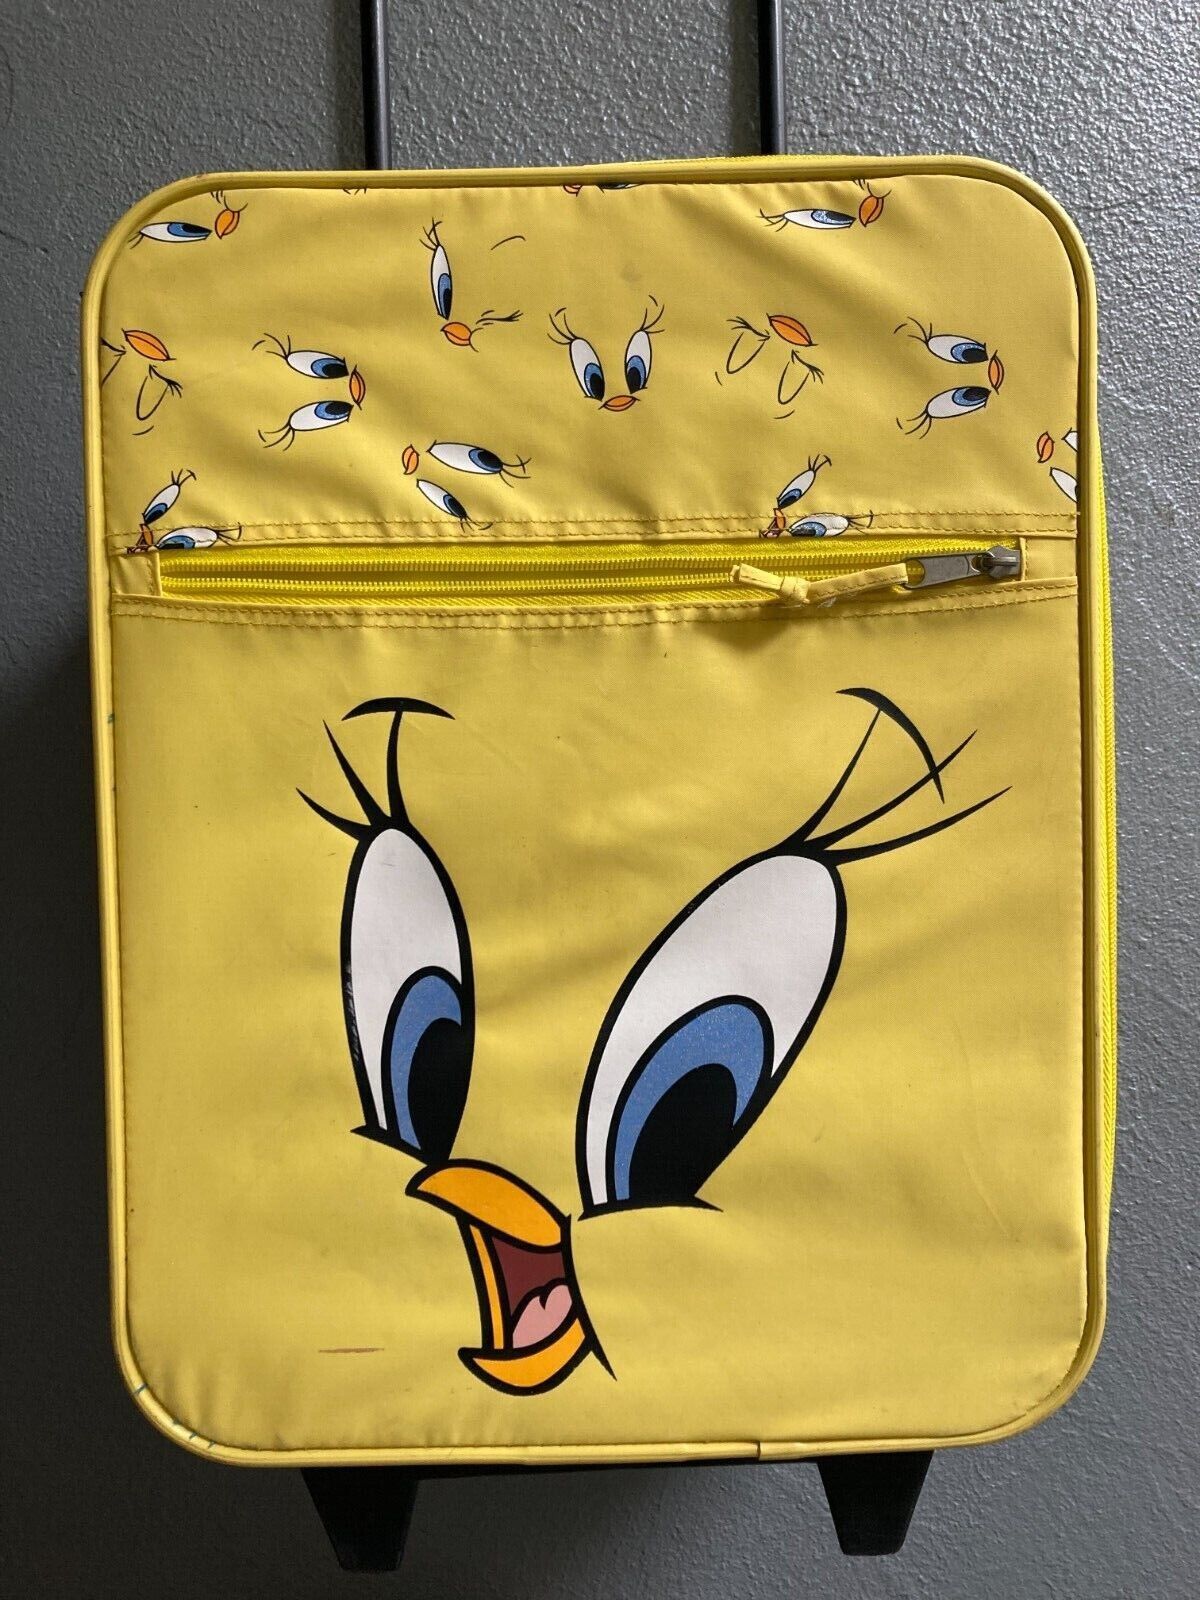 Vintage 1999 Warner Brothers Looney Tunes Tweety Bird Suitcase w/ Handle & Wheel